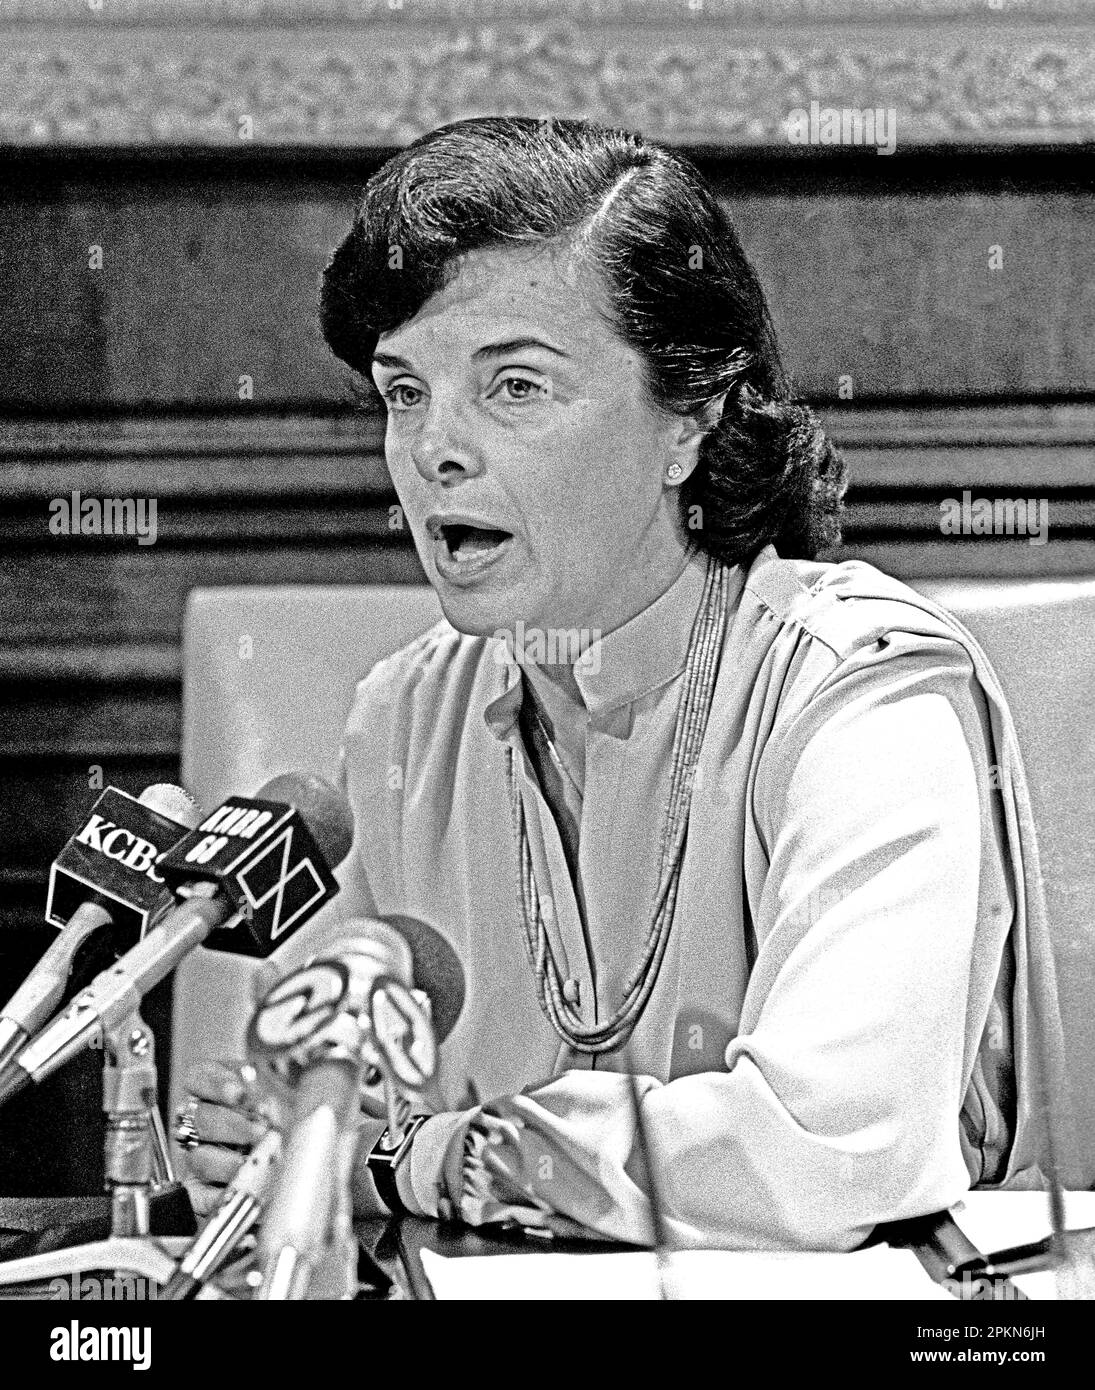 Die Bürgermeisterin von San Francisco, Dianne Feinstein, hält in ihrem Büro im Rathaus eine Pressekonferenz über Kapitalverbesserungen. Kalifornien, 1984, Stockfoto